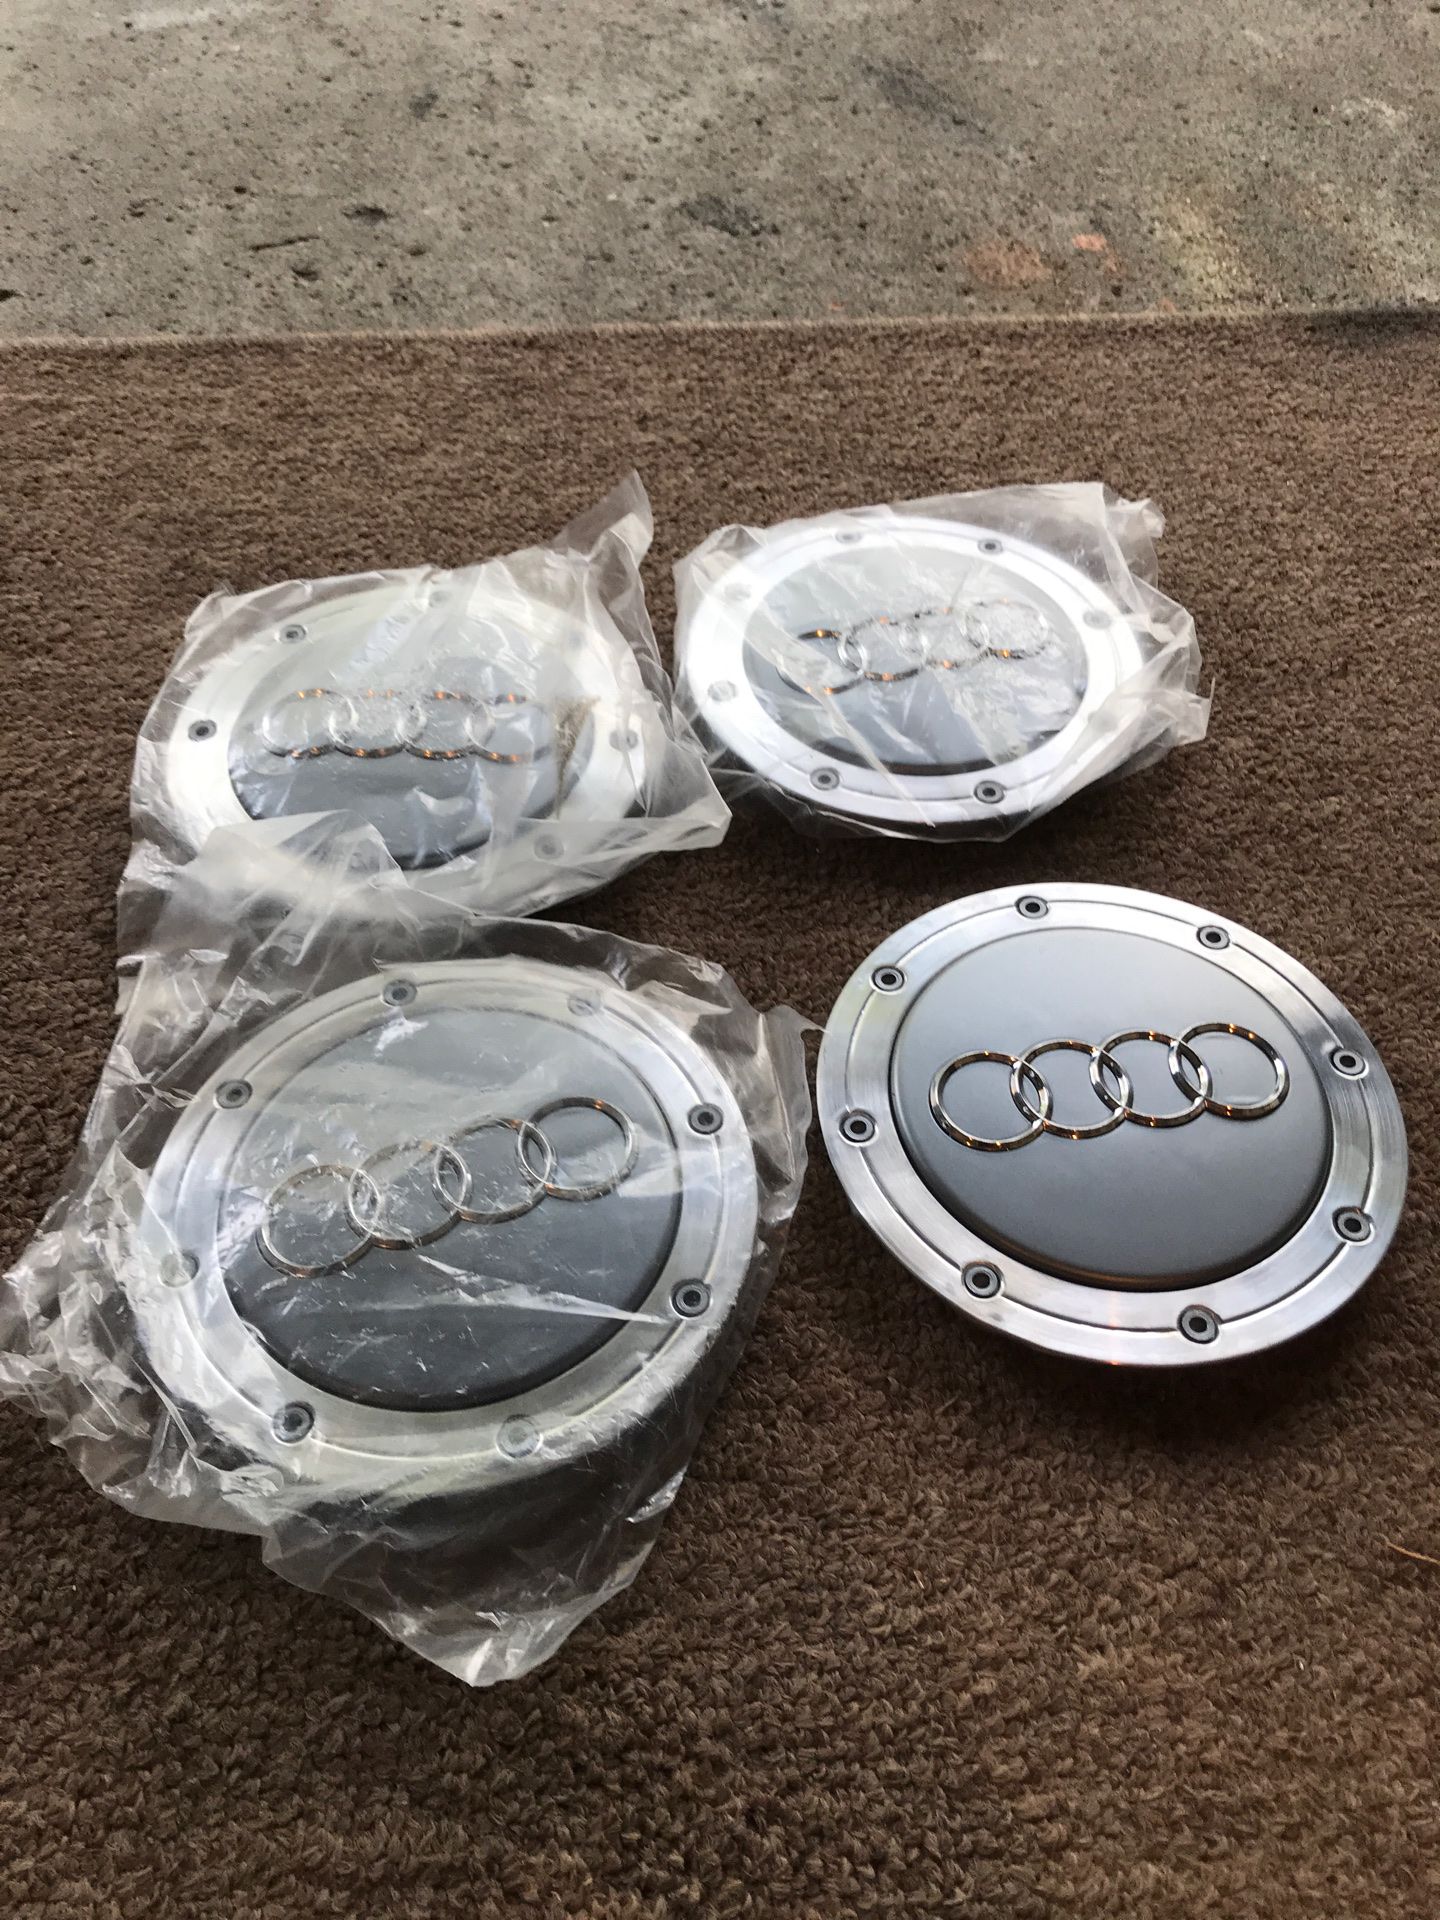 OEM set of Audi’s hub caps rims